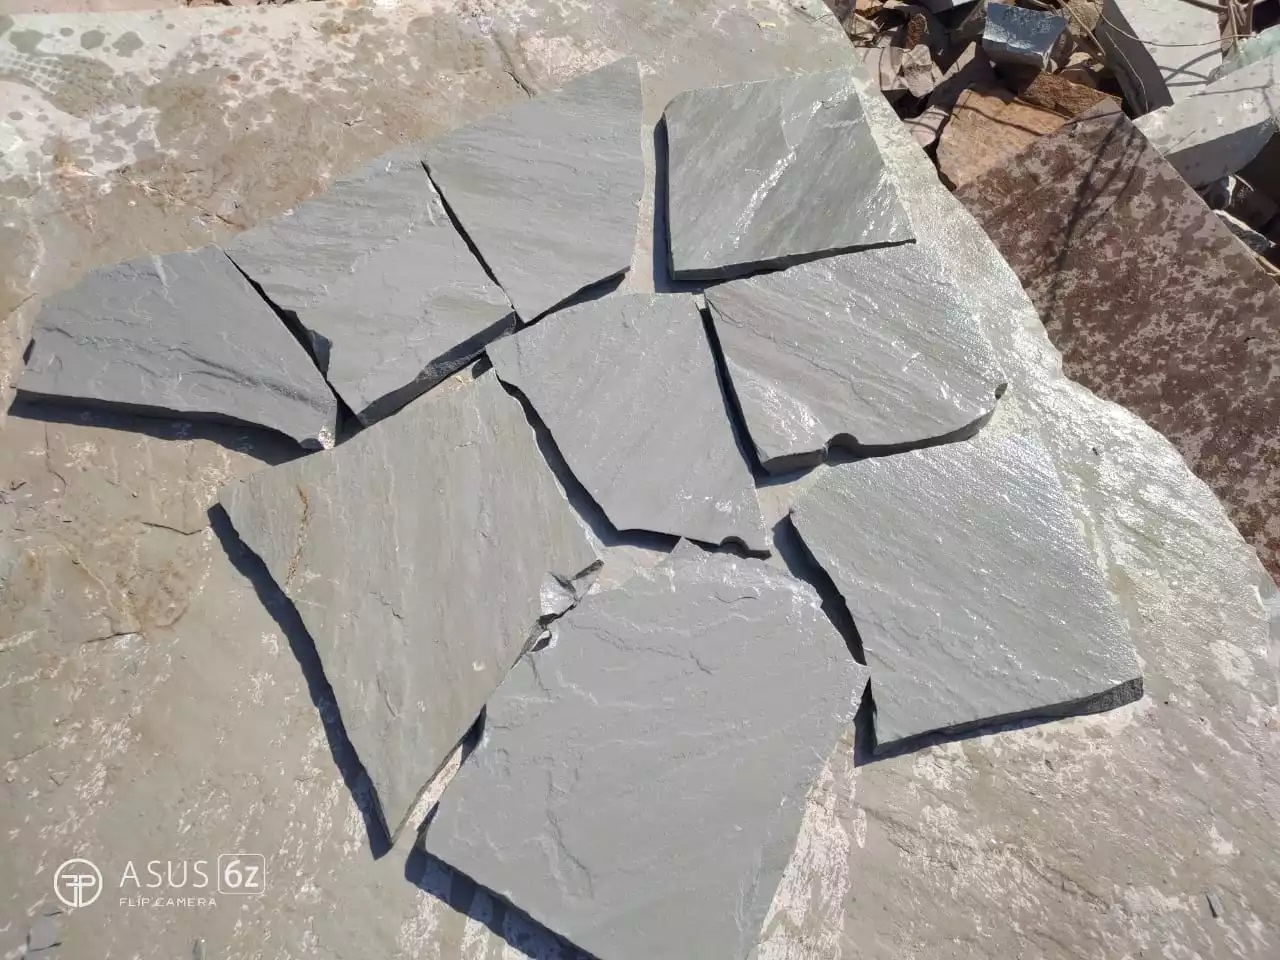 Kandla Grey Sandstone Crazy Paving Stone